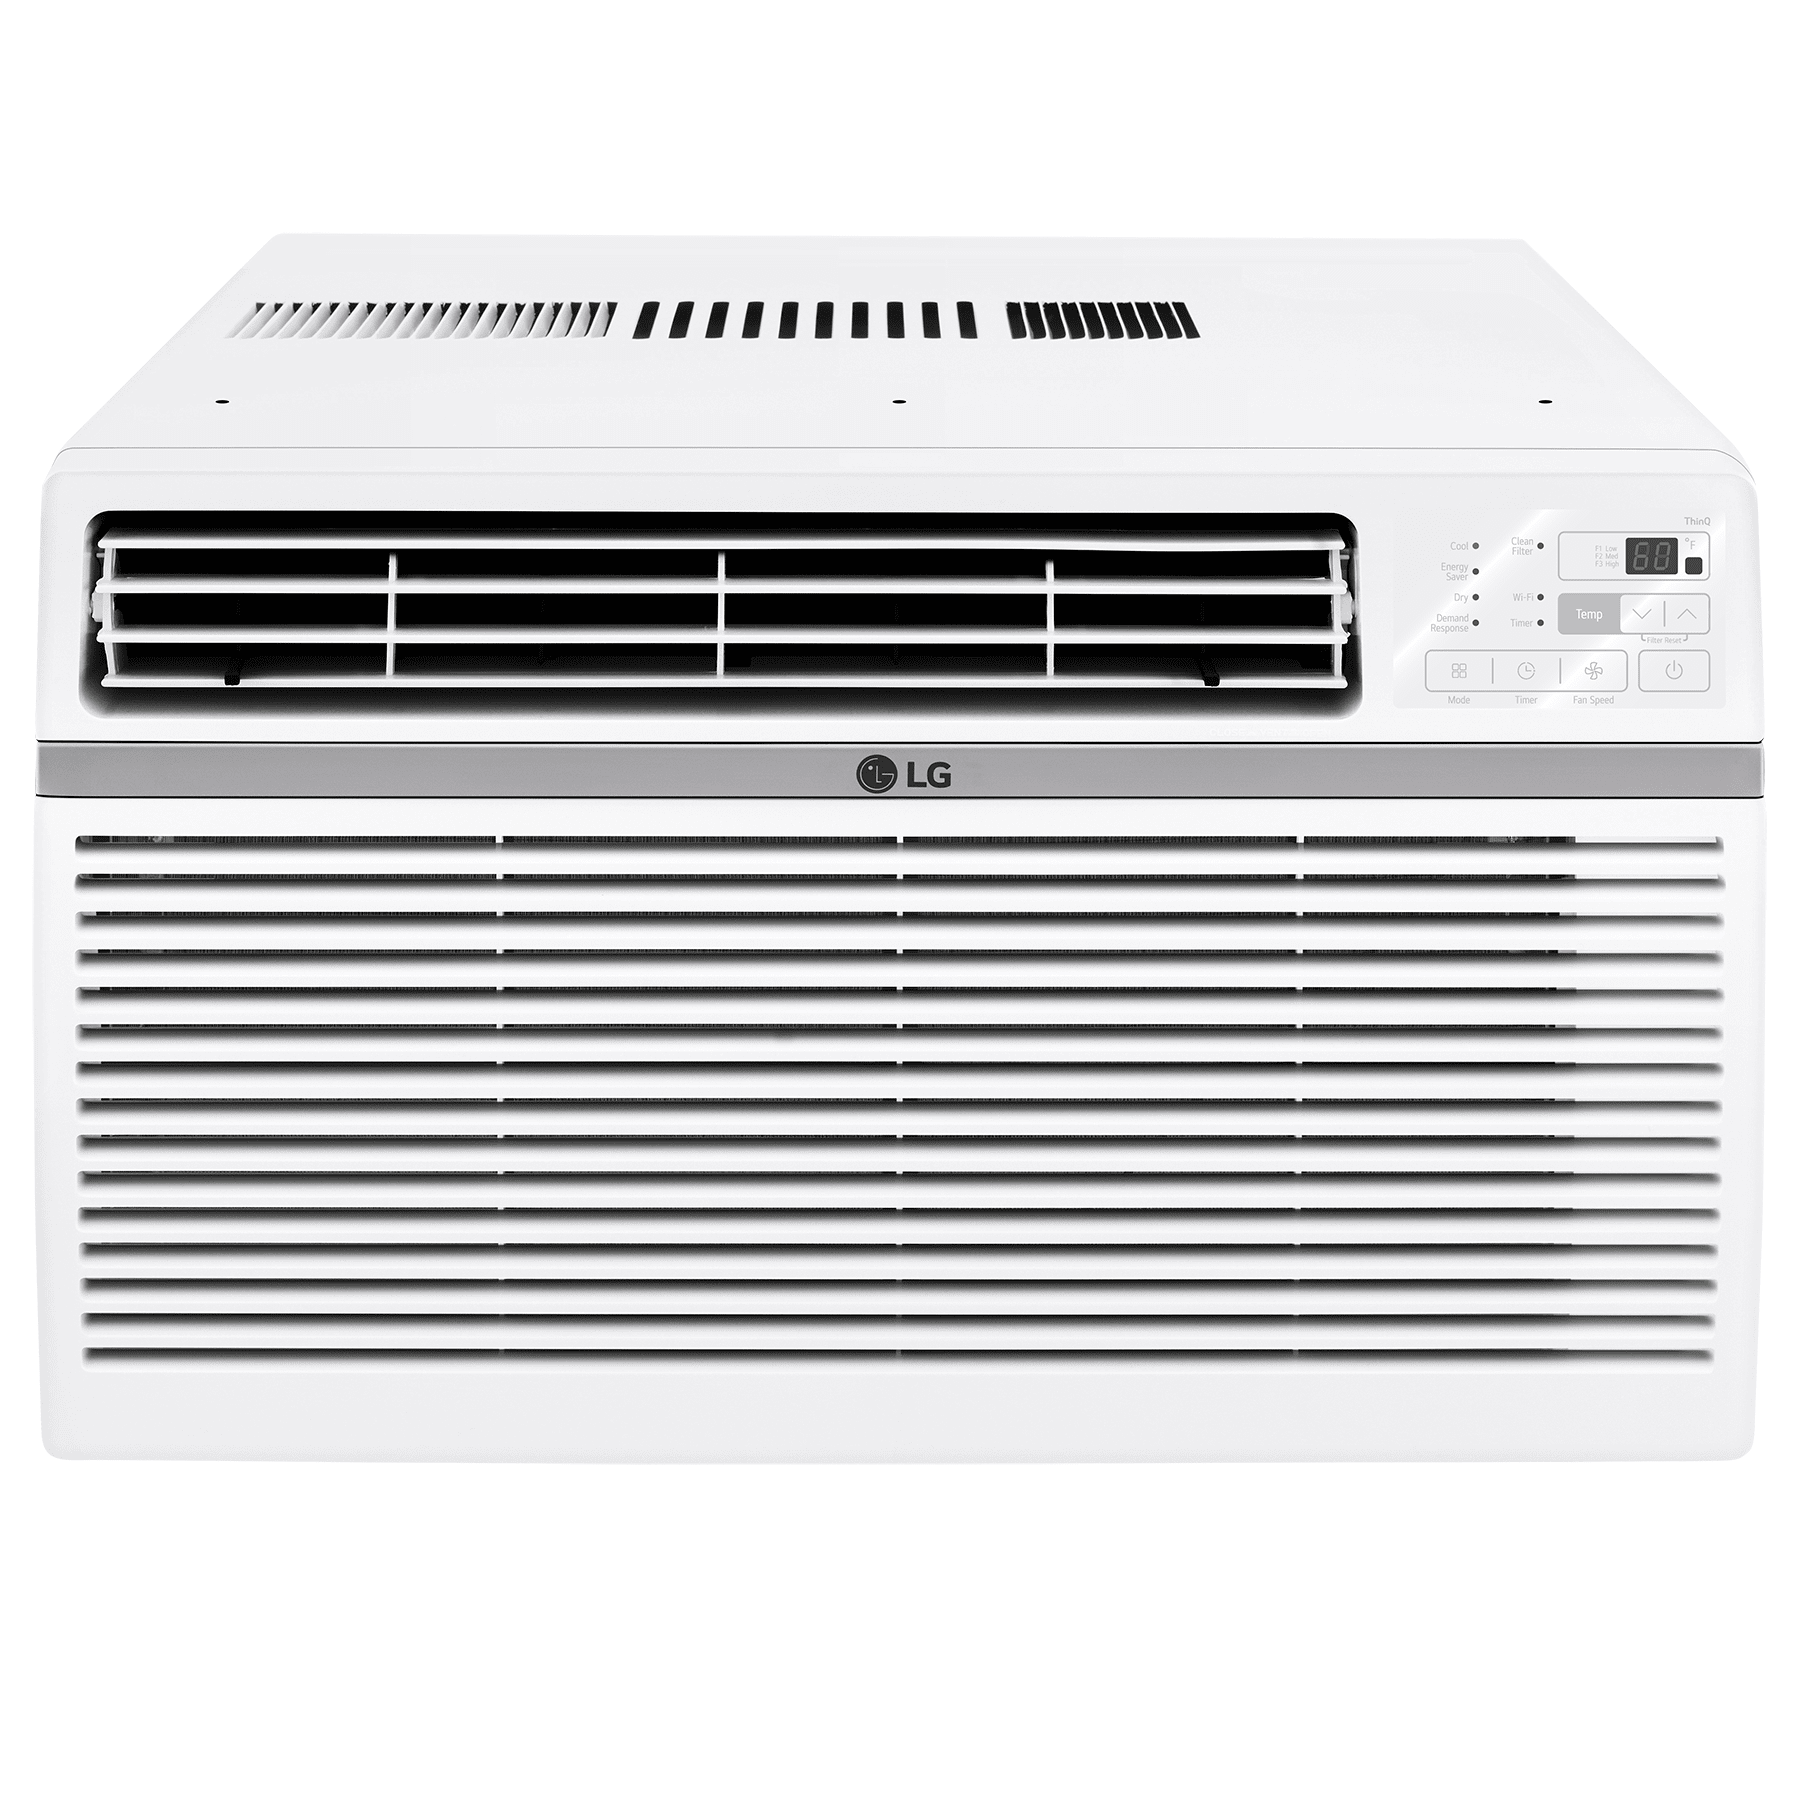 LG 24,500 BTU Window Air Conditioner w/ Electronic Controls